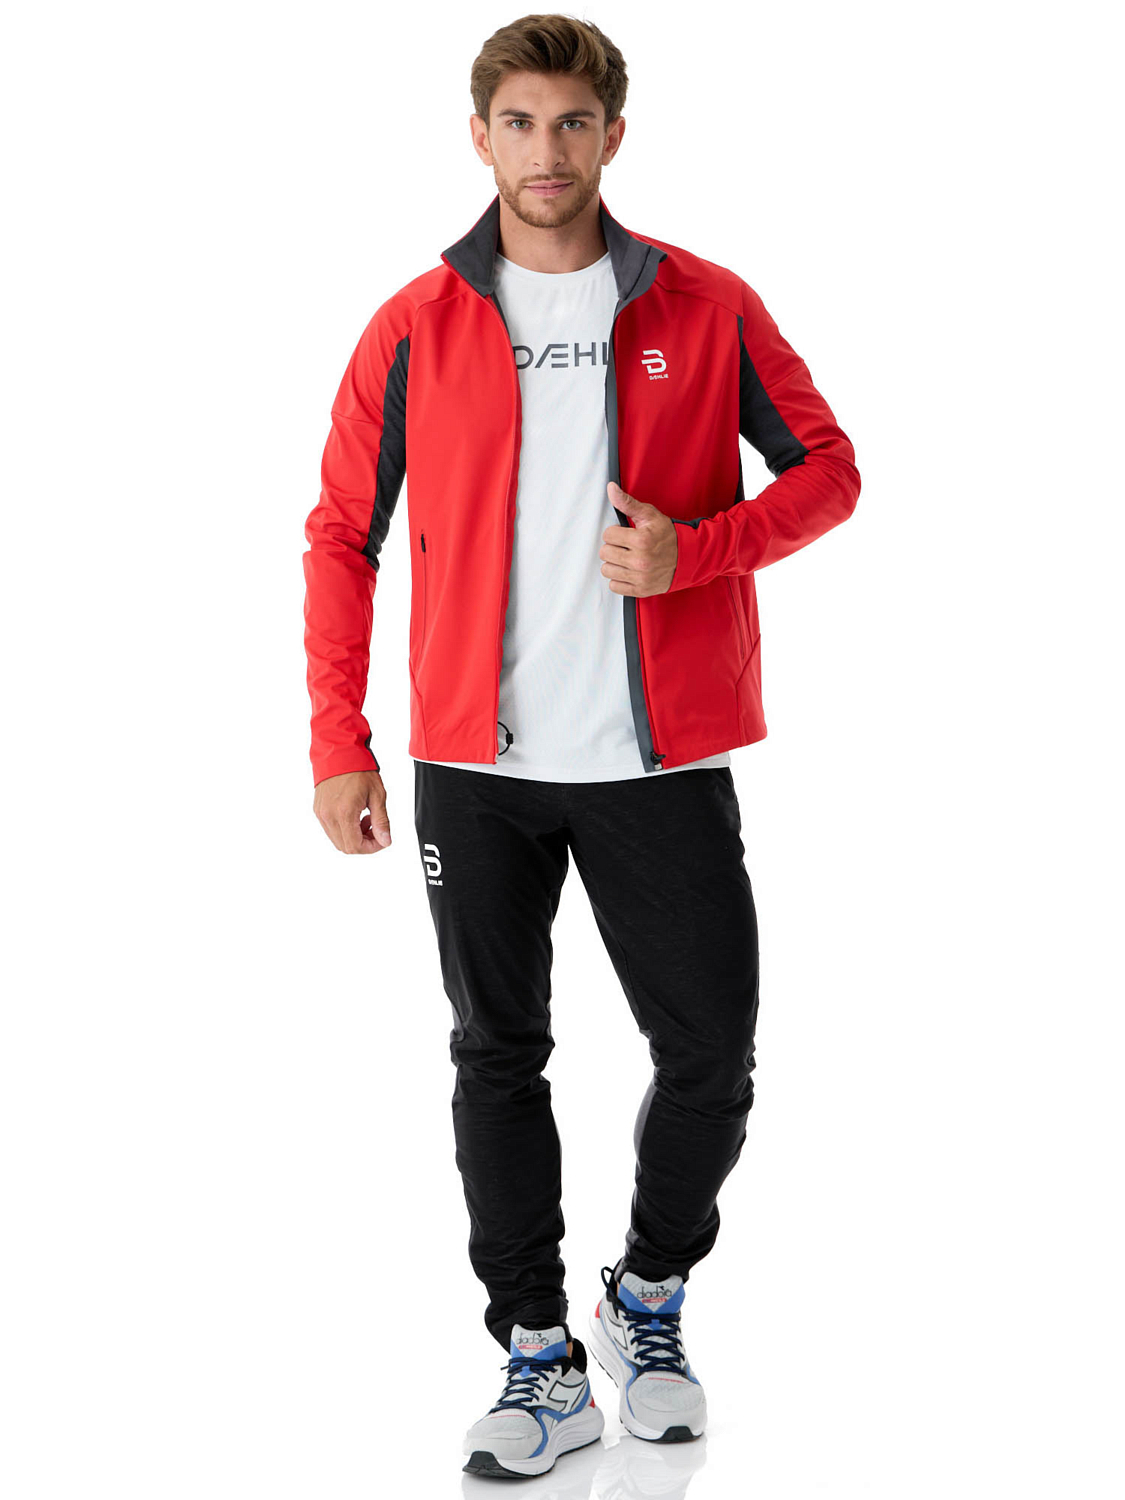 Куртка беговая Bjorn Daehlie Jacket Legacy Wool High Risk Red